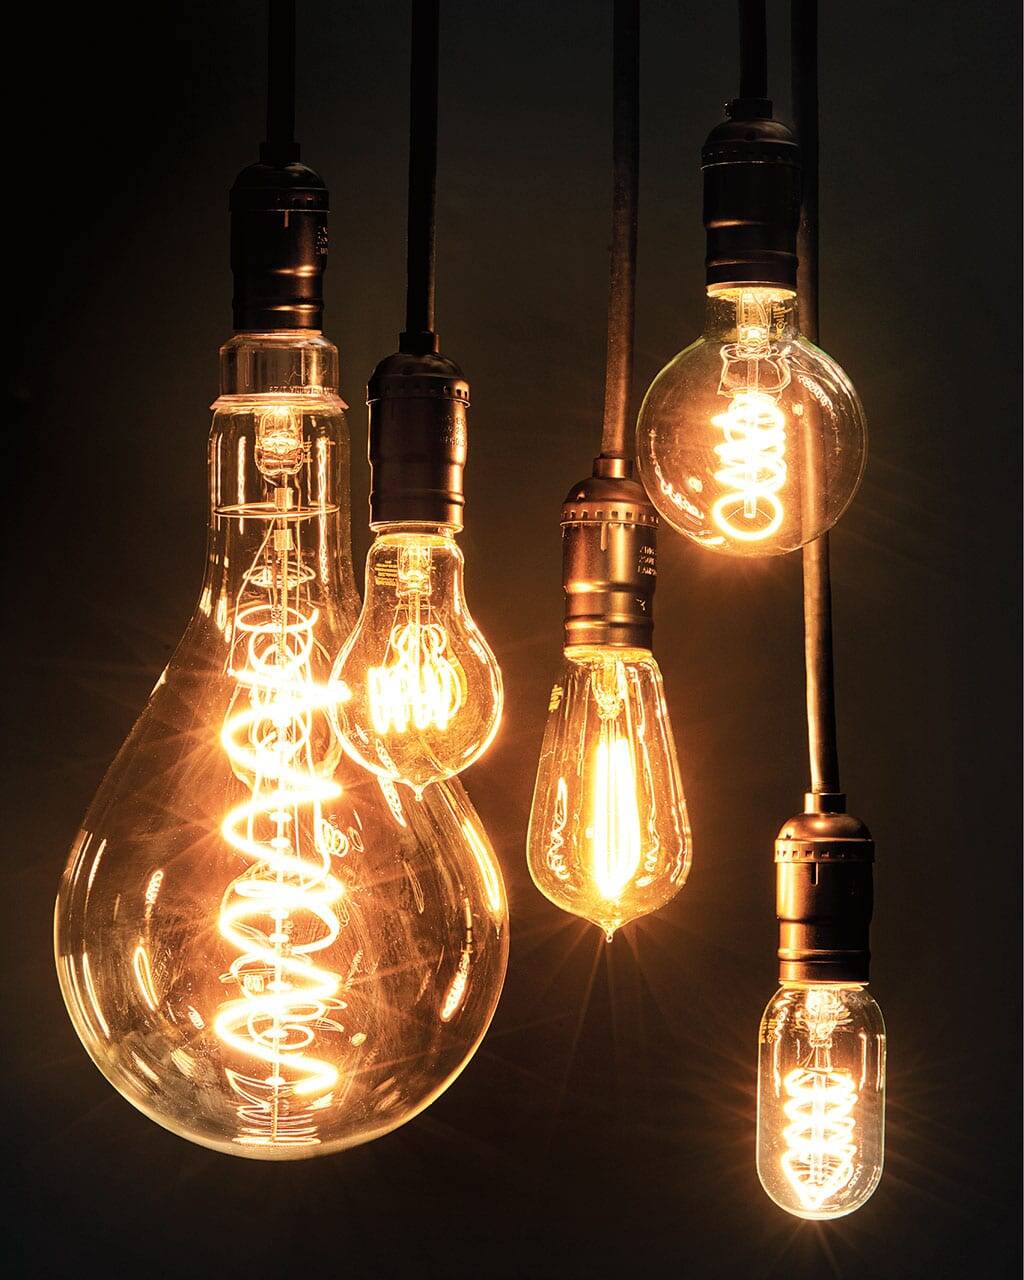 LED企業亟須加強知識產權管理和應訴能力